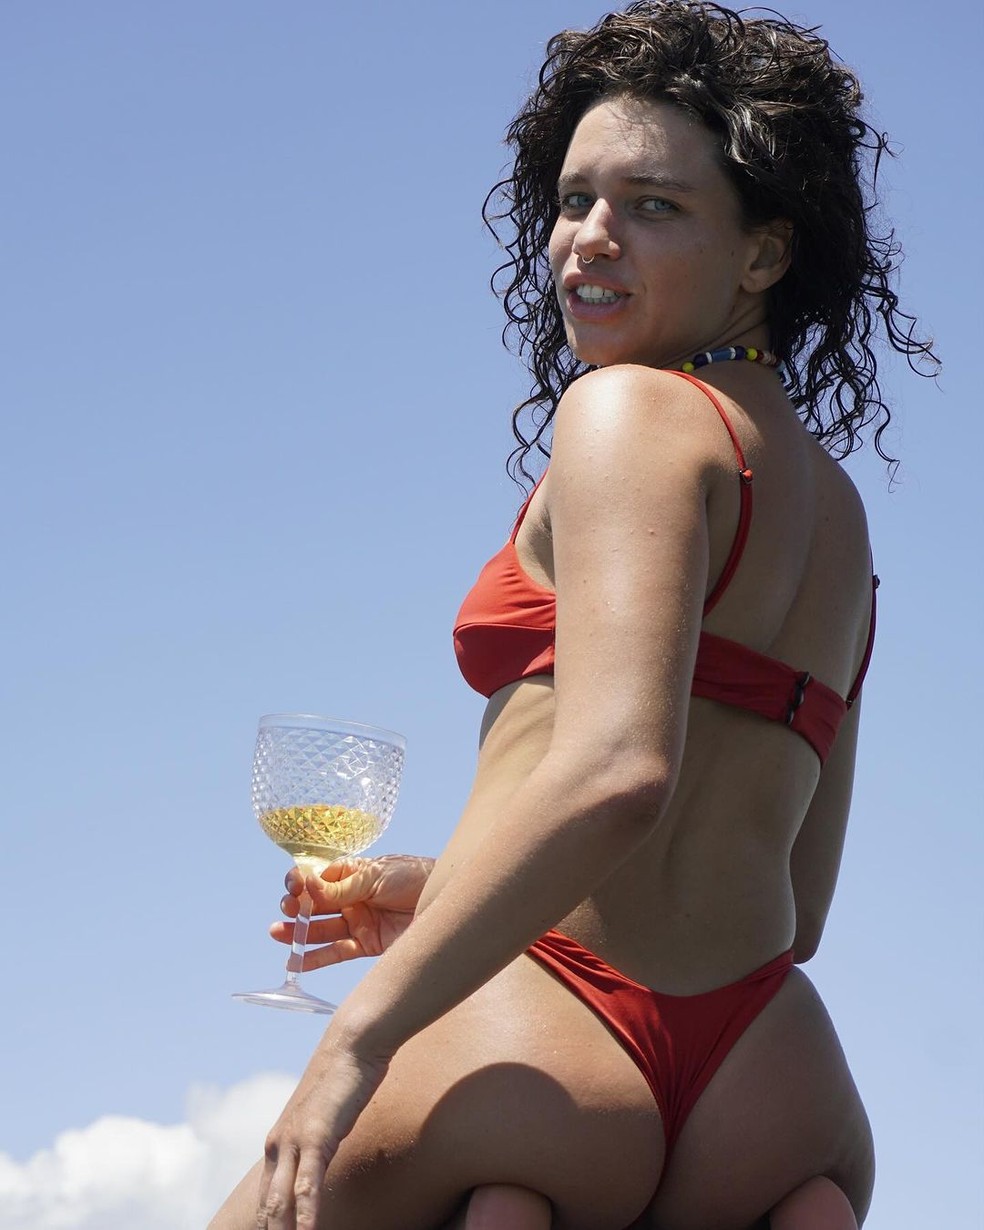 Foto: Bruna Linzmeywe apostou em lingerie vermelha para catálogo da Del Rio  - Purepeople